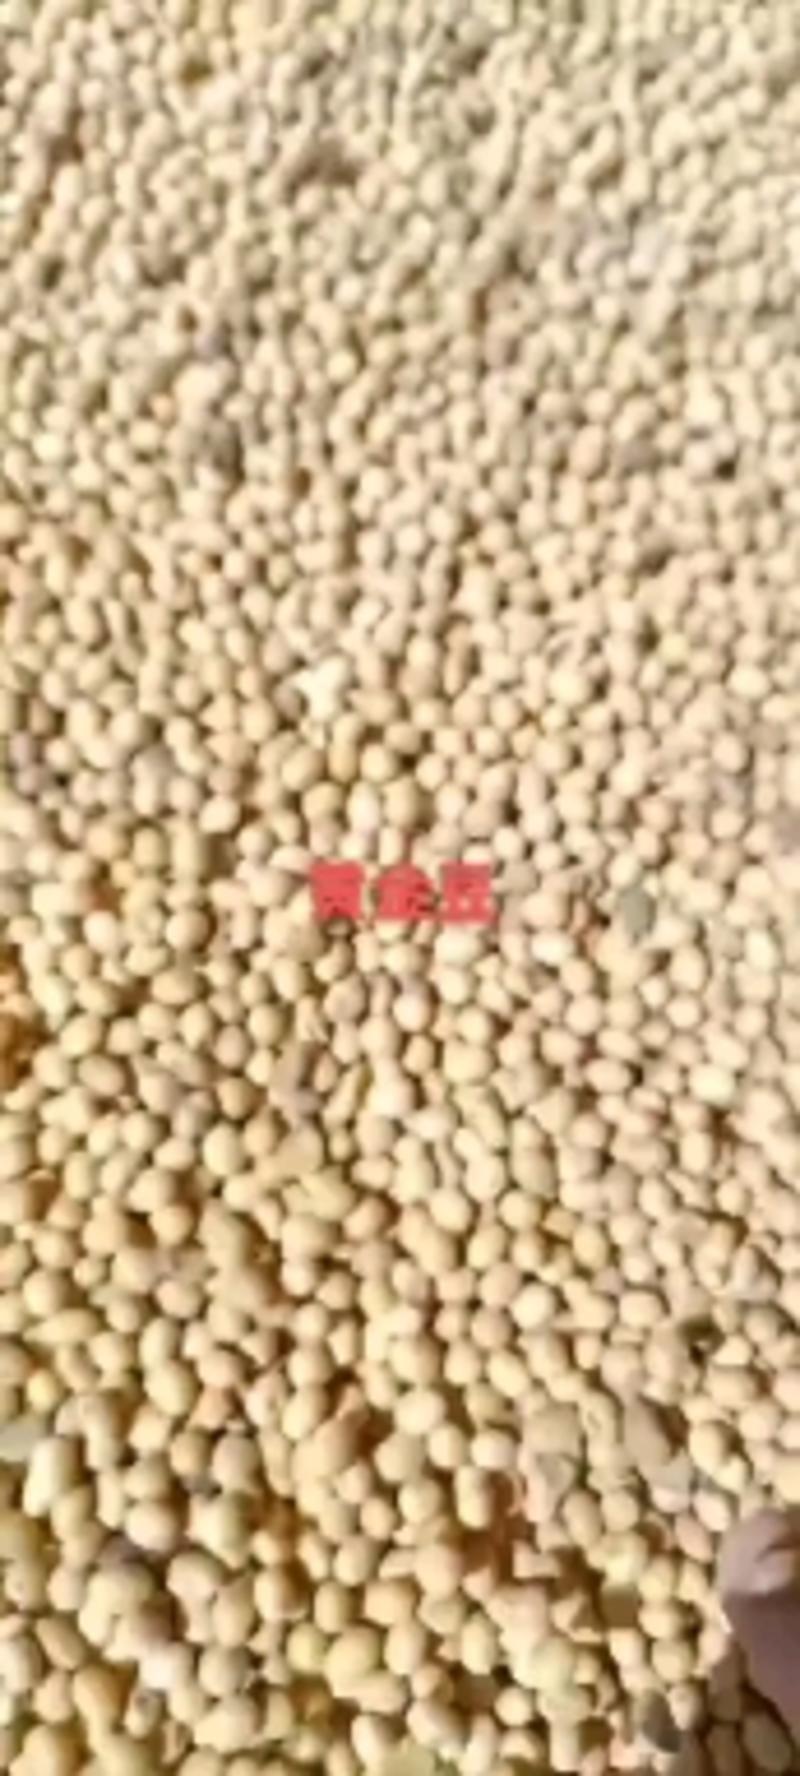 黄豆安徽本地大豆适合各种豆制品加工